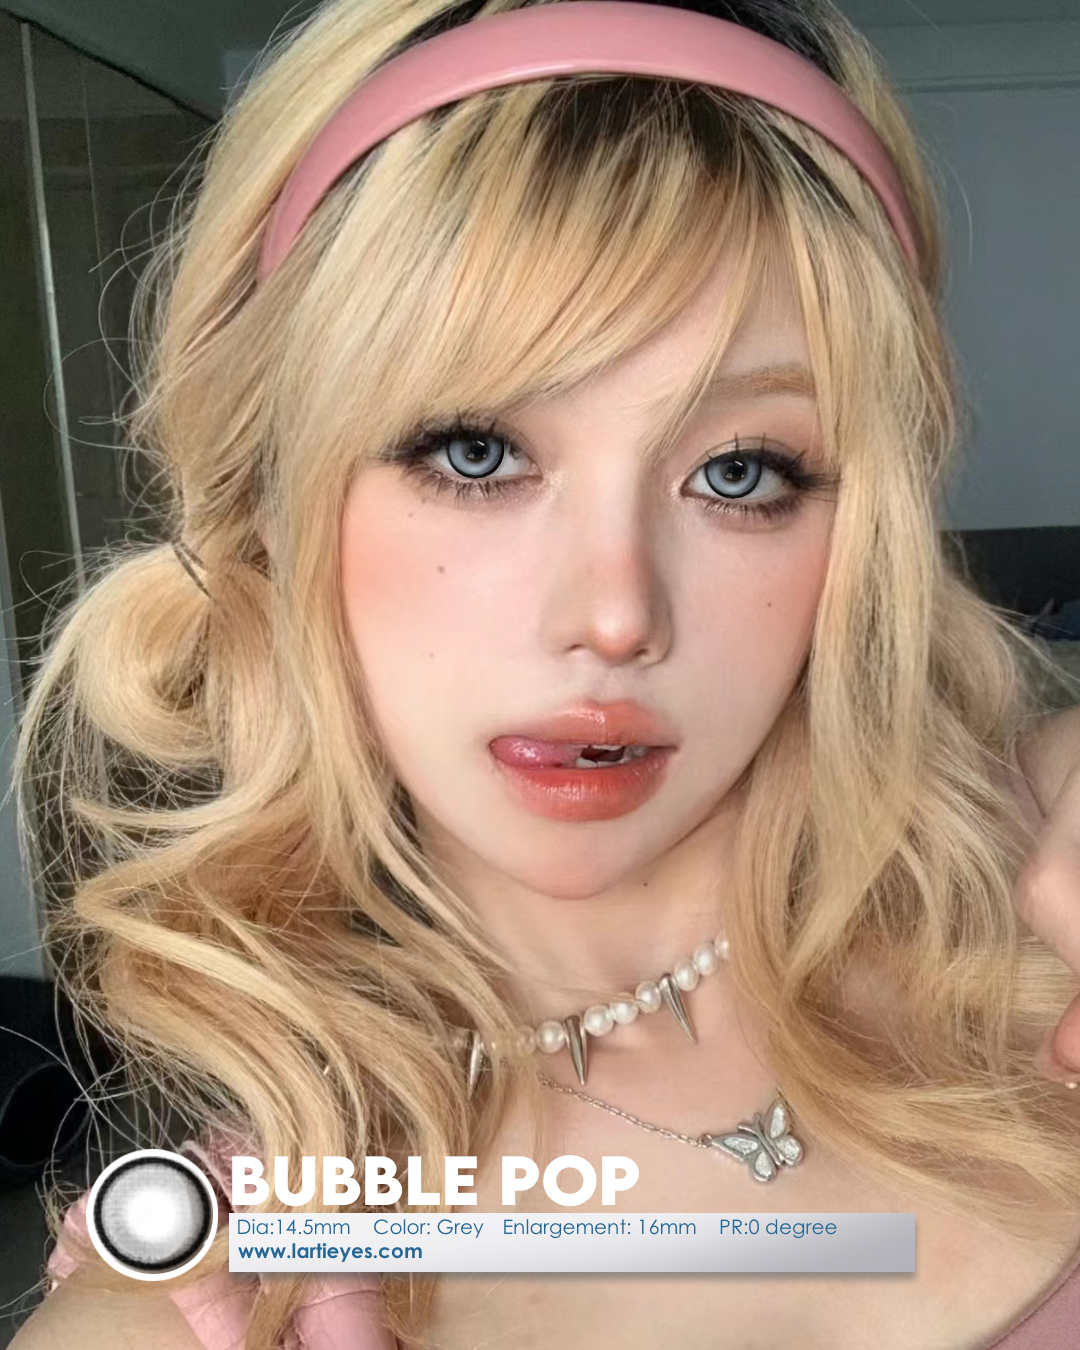 Bubble pop model 2